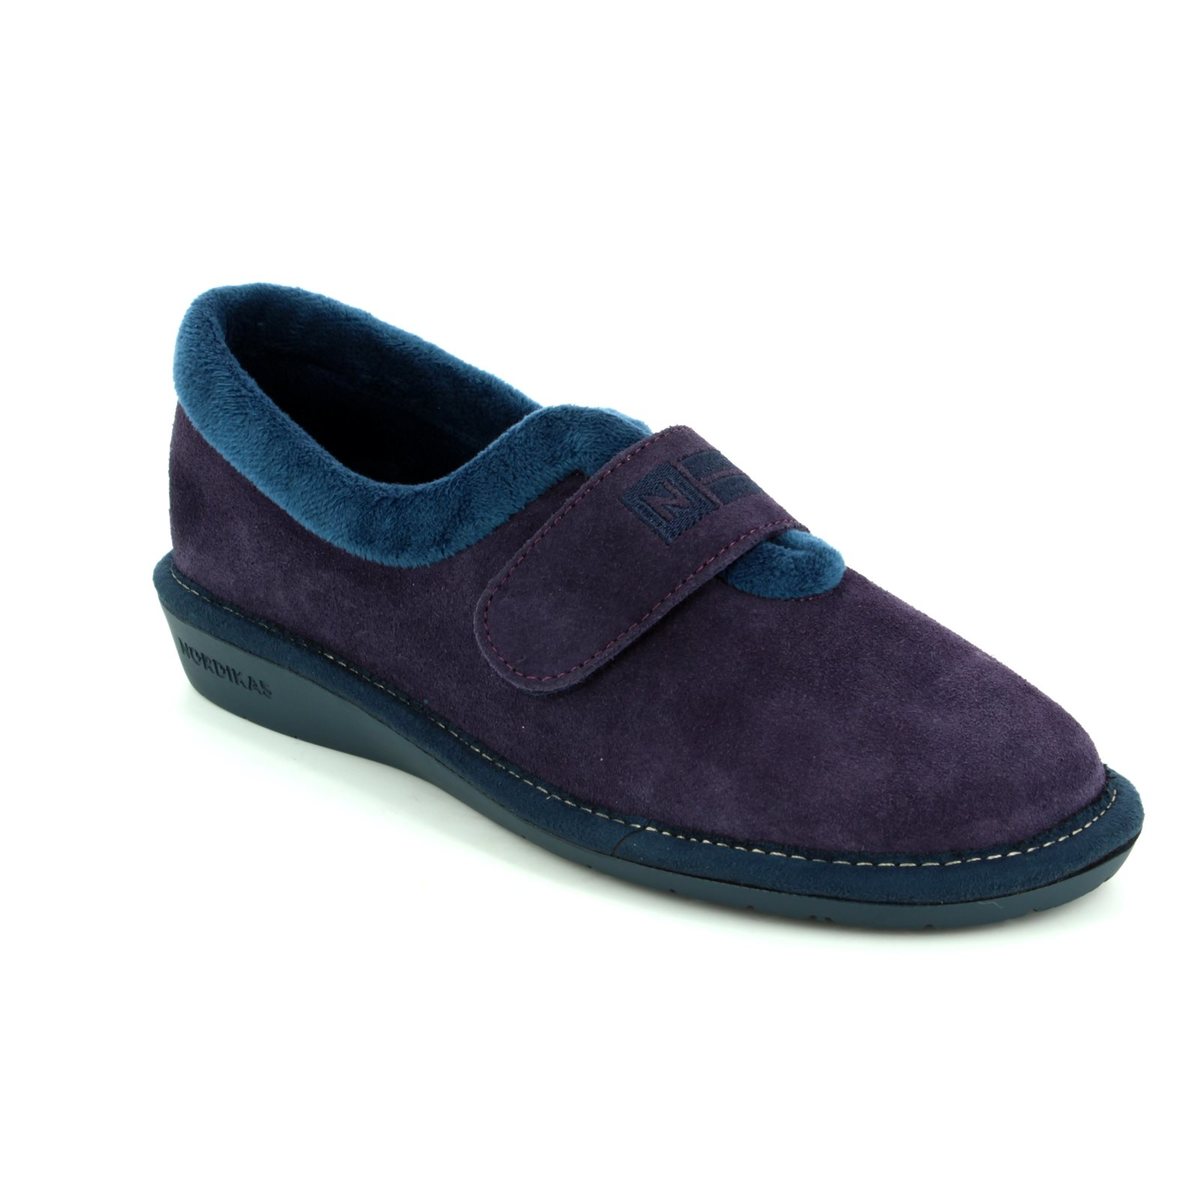 Nordikas Norvel Purple Womens slippers 6348-4 in a Plain  in Size 40